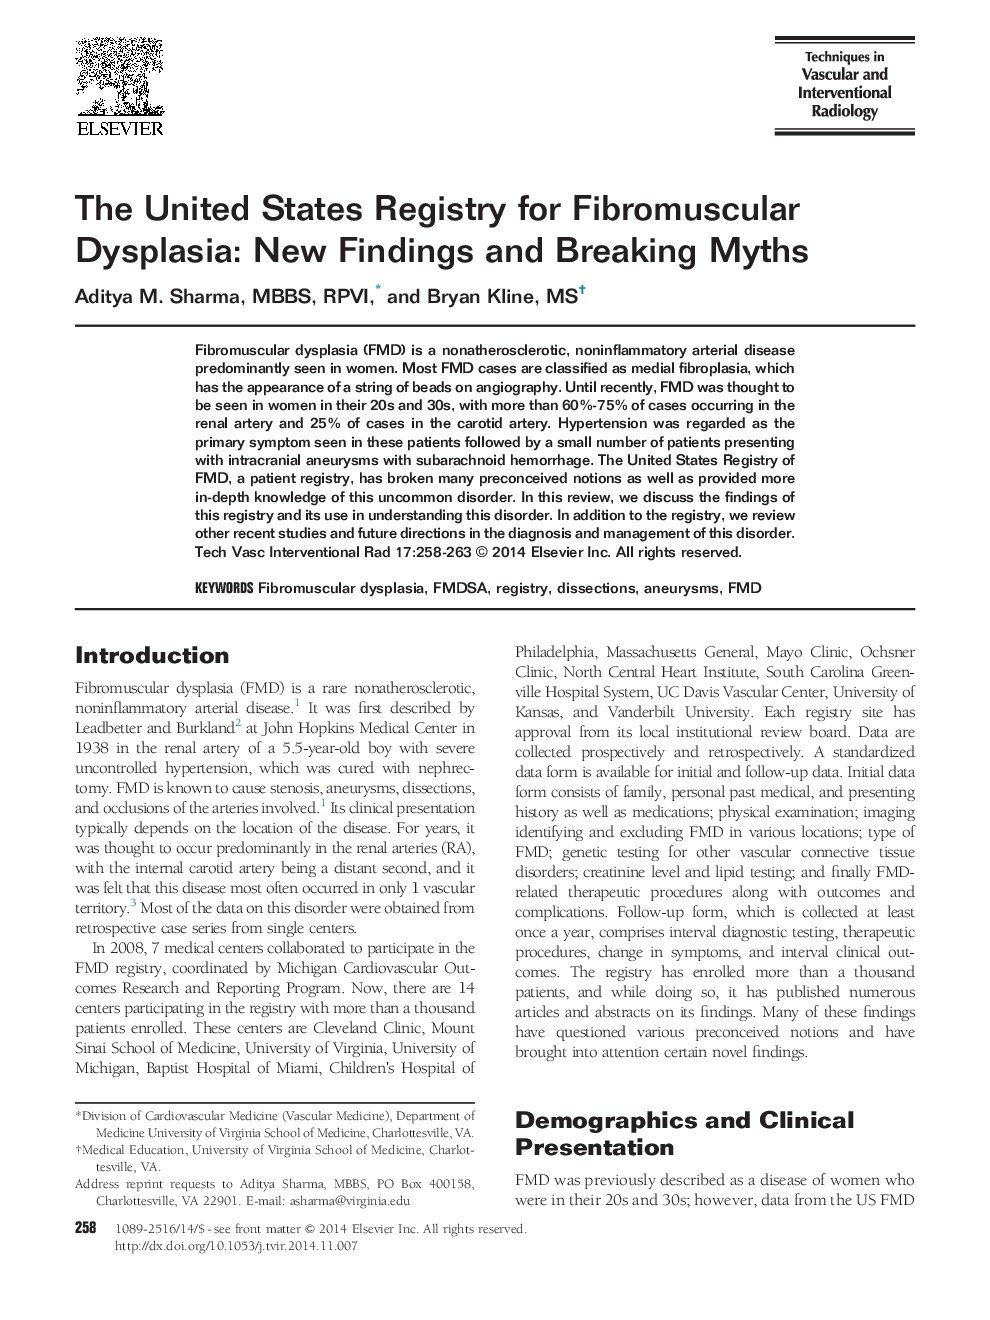 ثبت نام ایالات متحده برای دیسپلازی فیبرومولکولار: یافته های جدید و افسانه های شکستن 